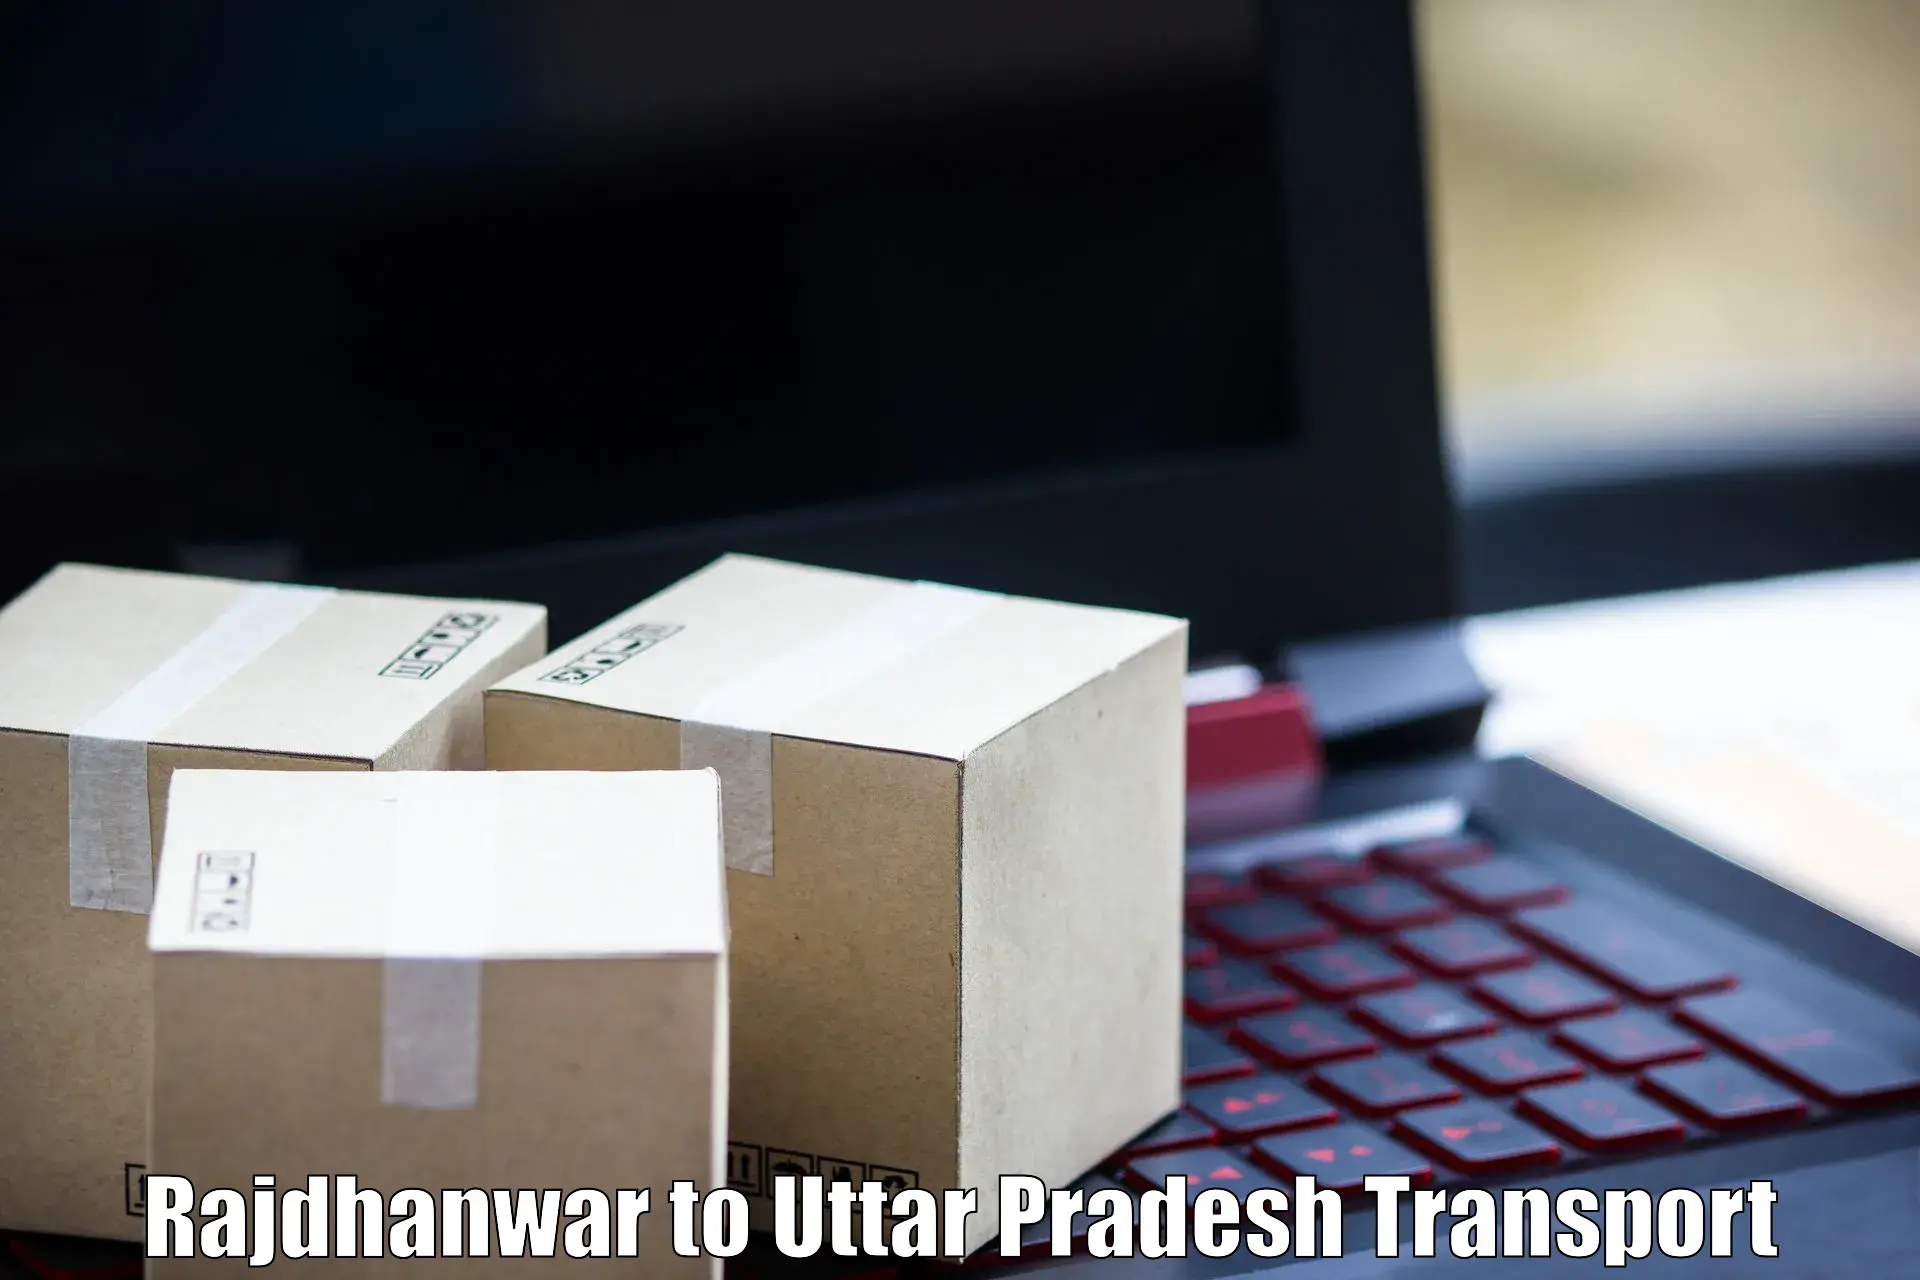 Delivery service Rajdhanwar to Hathras